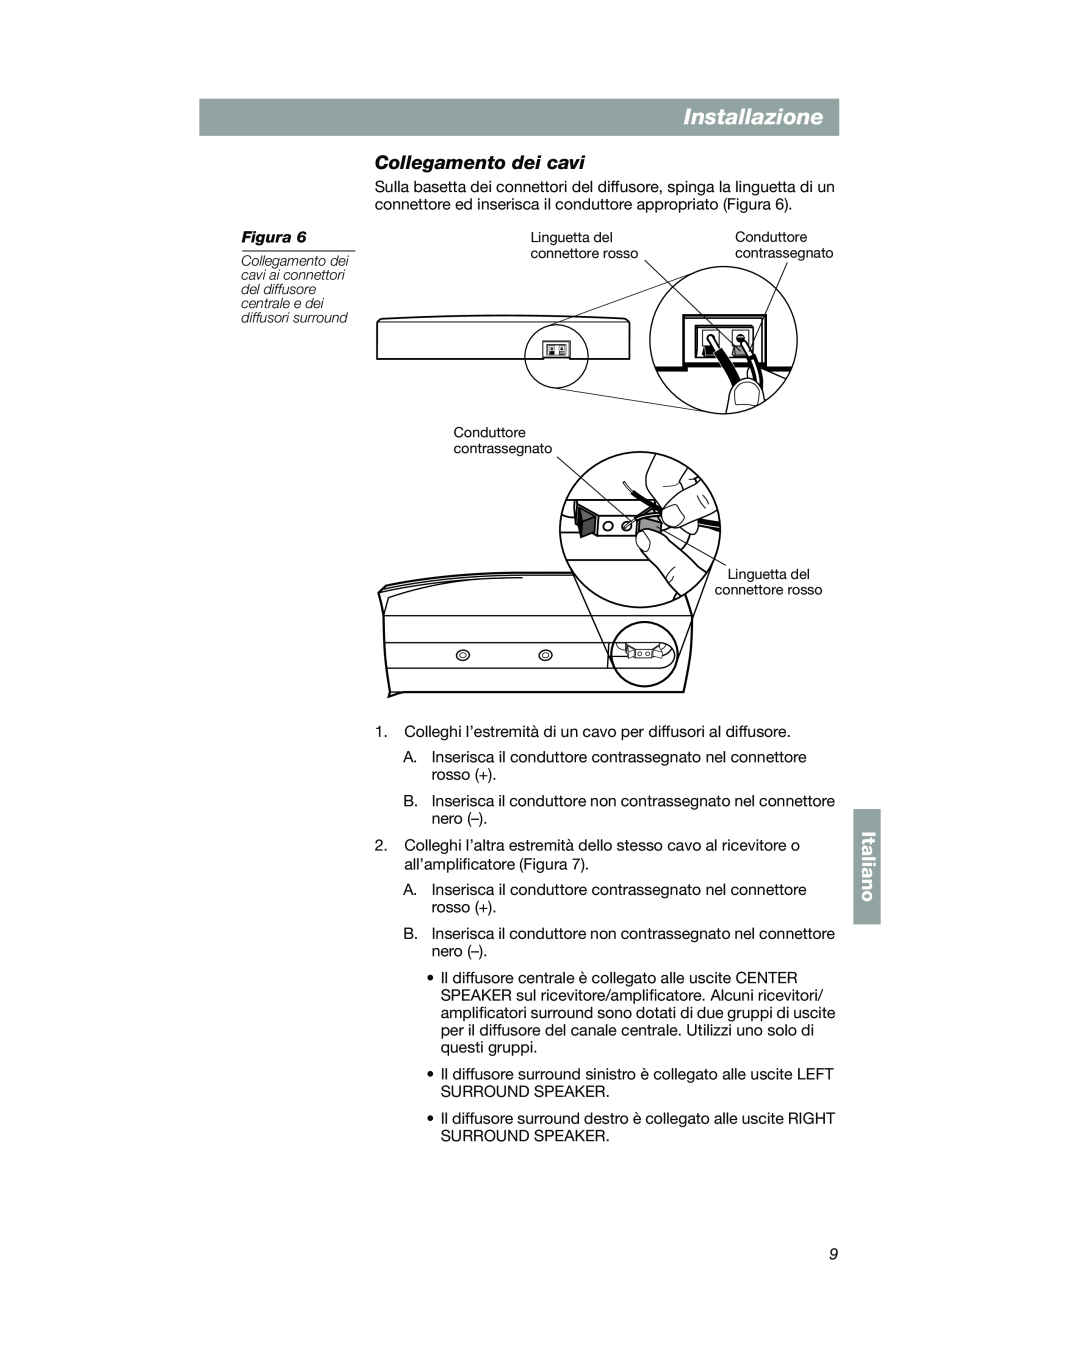 Bose VCS-10 manual Collegamento dei cavi, Installazione, Italiano, Linguetta del, Conduttore, connettore rosso 